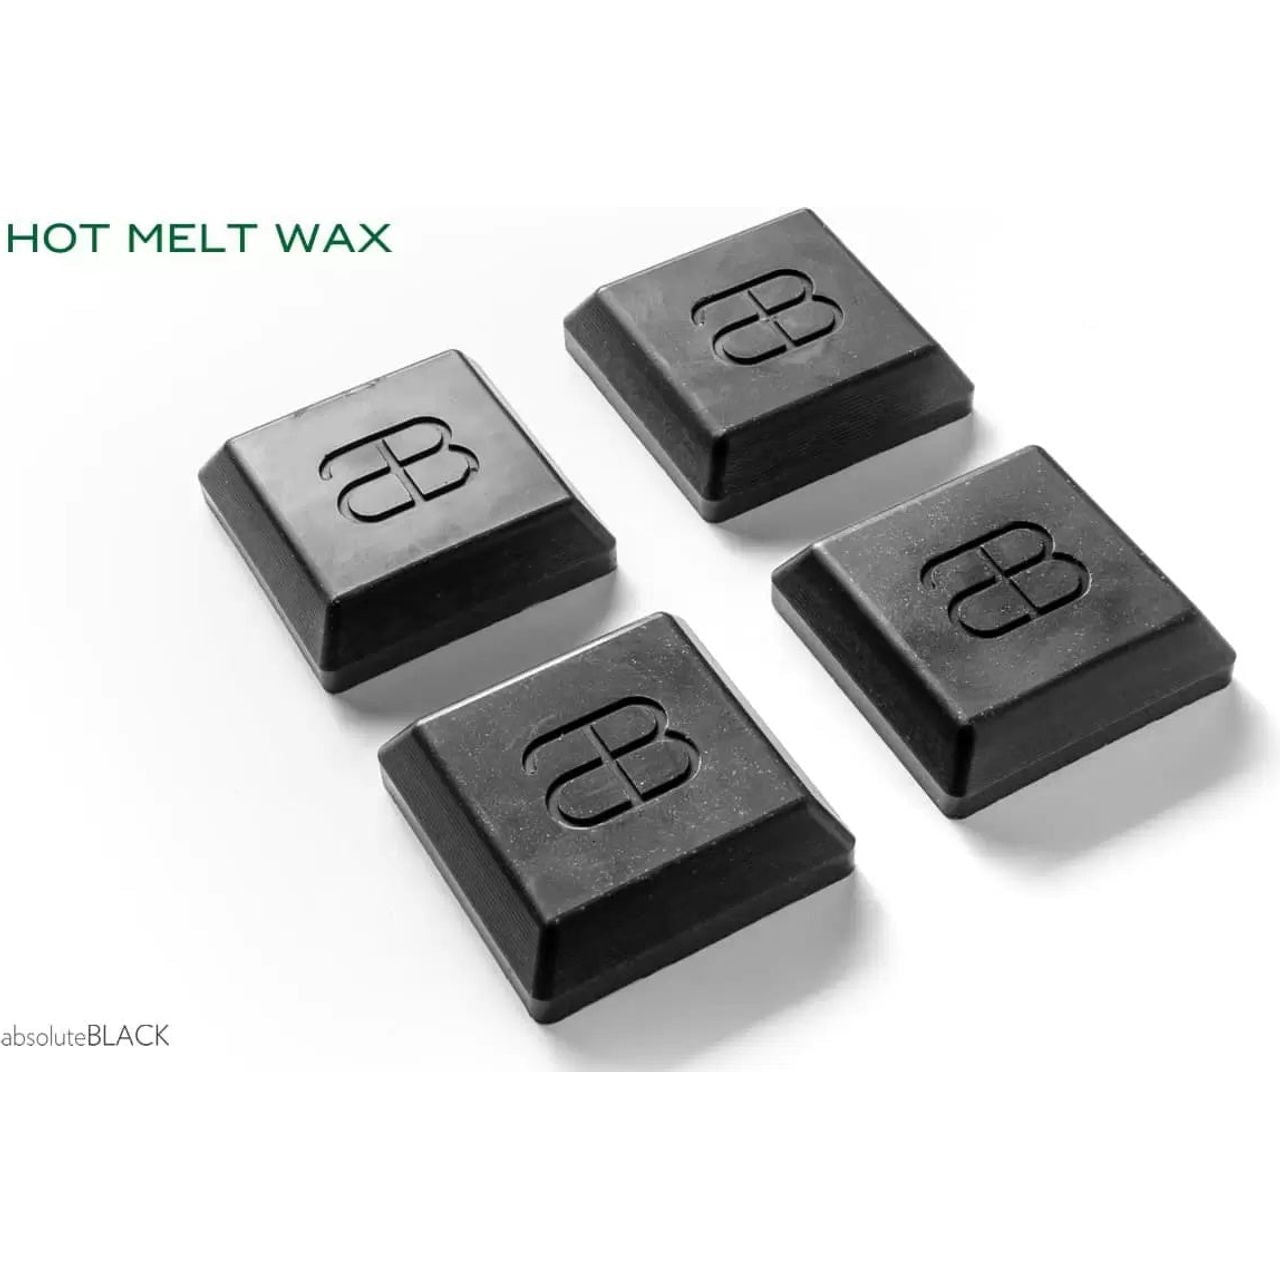 absoluteBLACK GRAPHENWax Hot Melt Wax Chain Lubricant - 340g Box